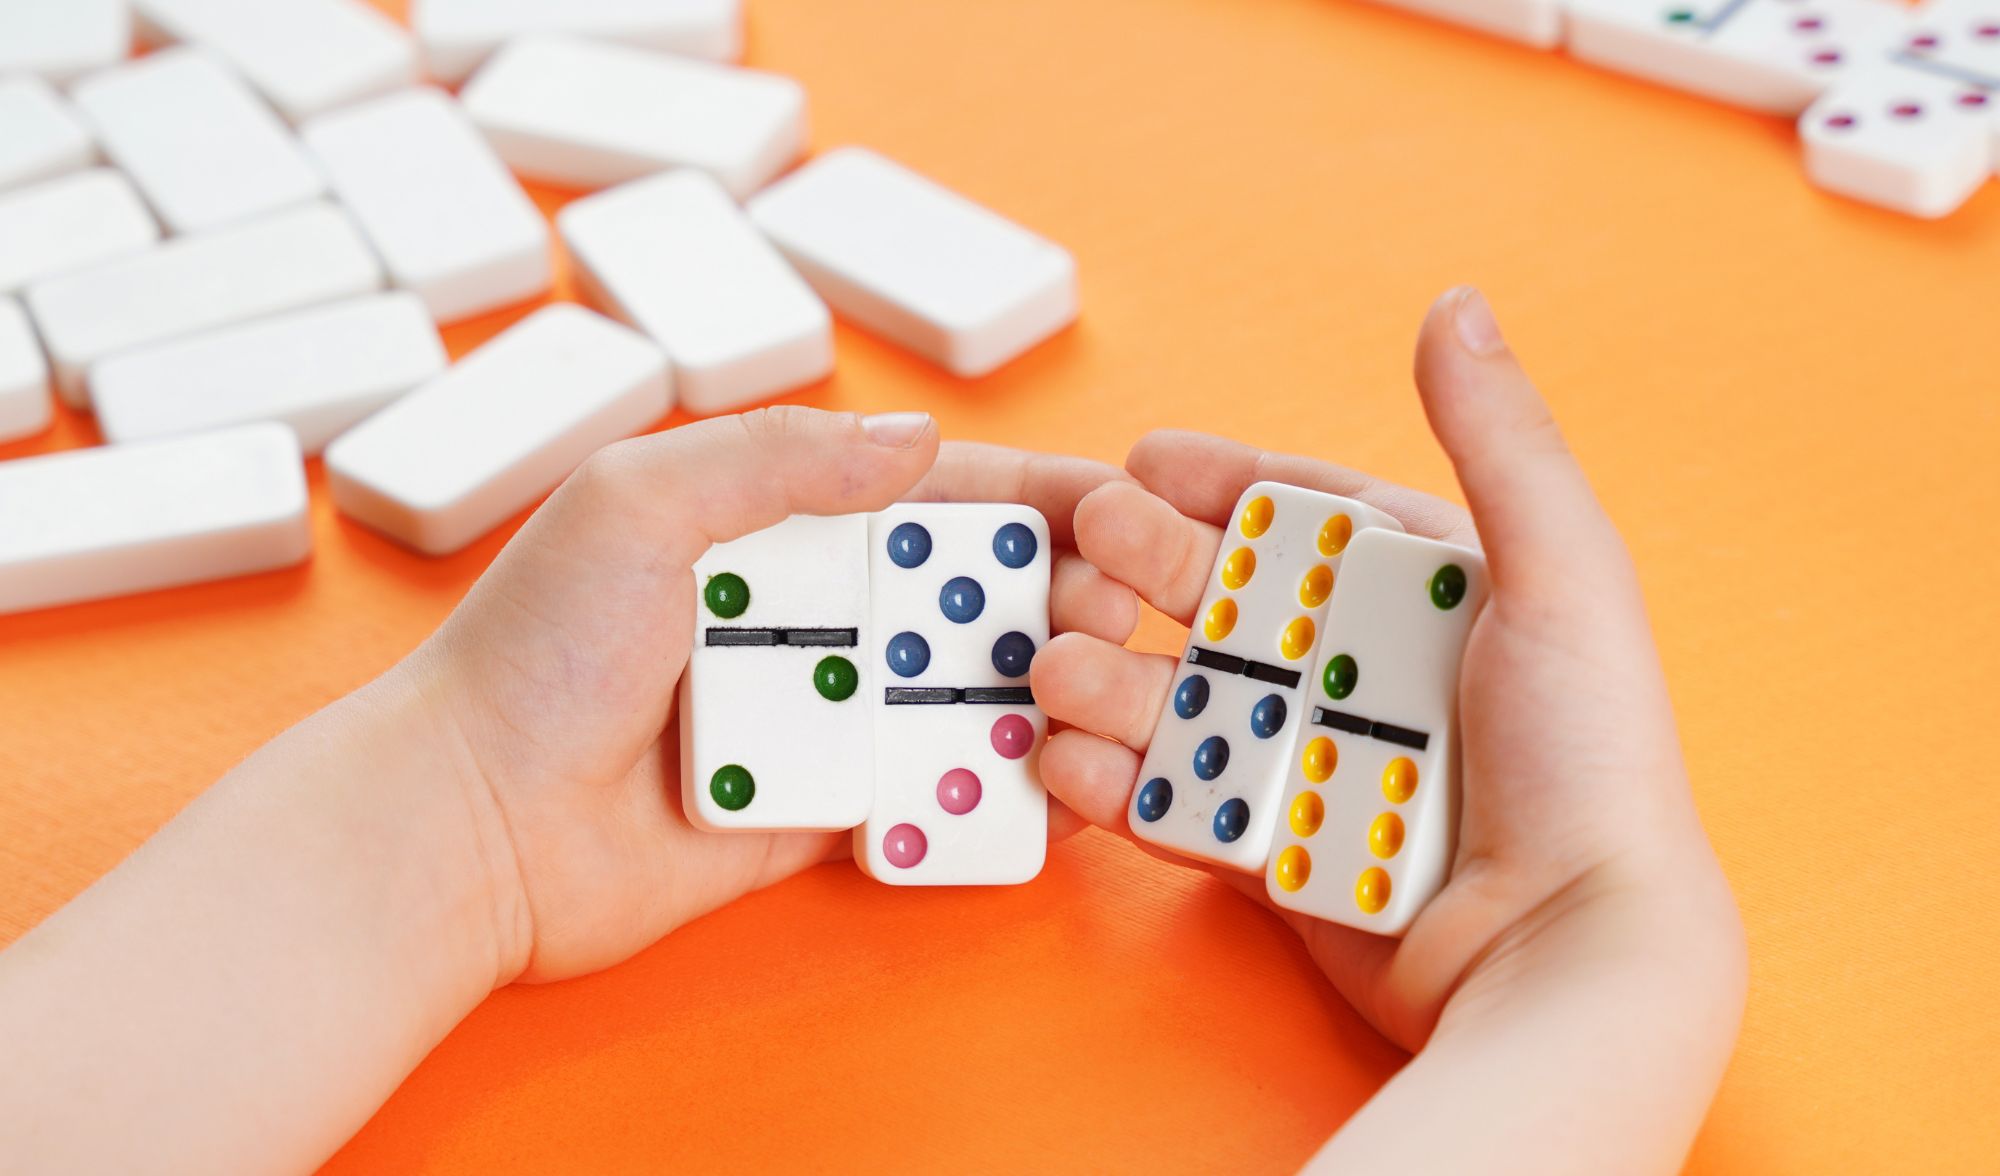 gra w domino nauka matematyki mat4fun -  10 gier matematycznych z domino, które uczą i bawią!